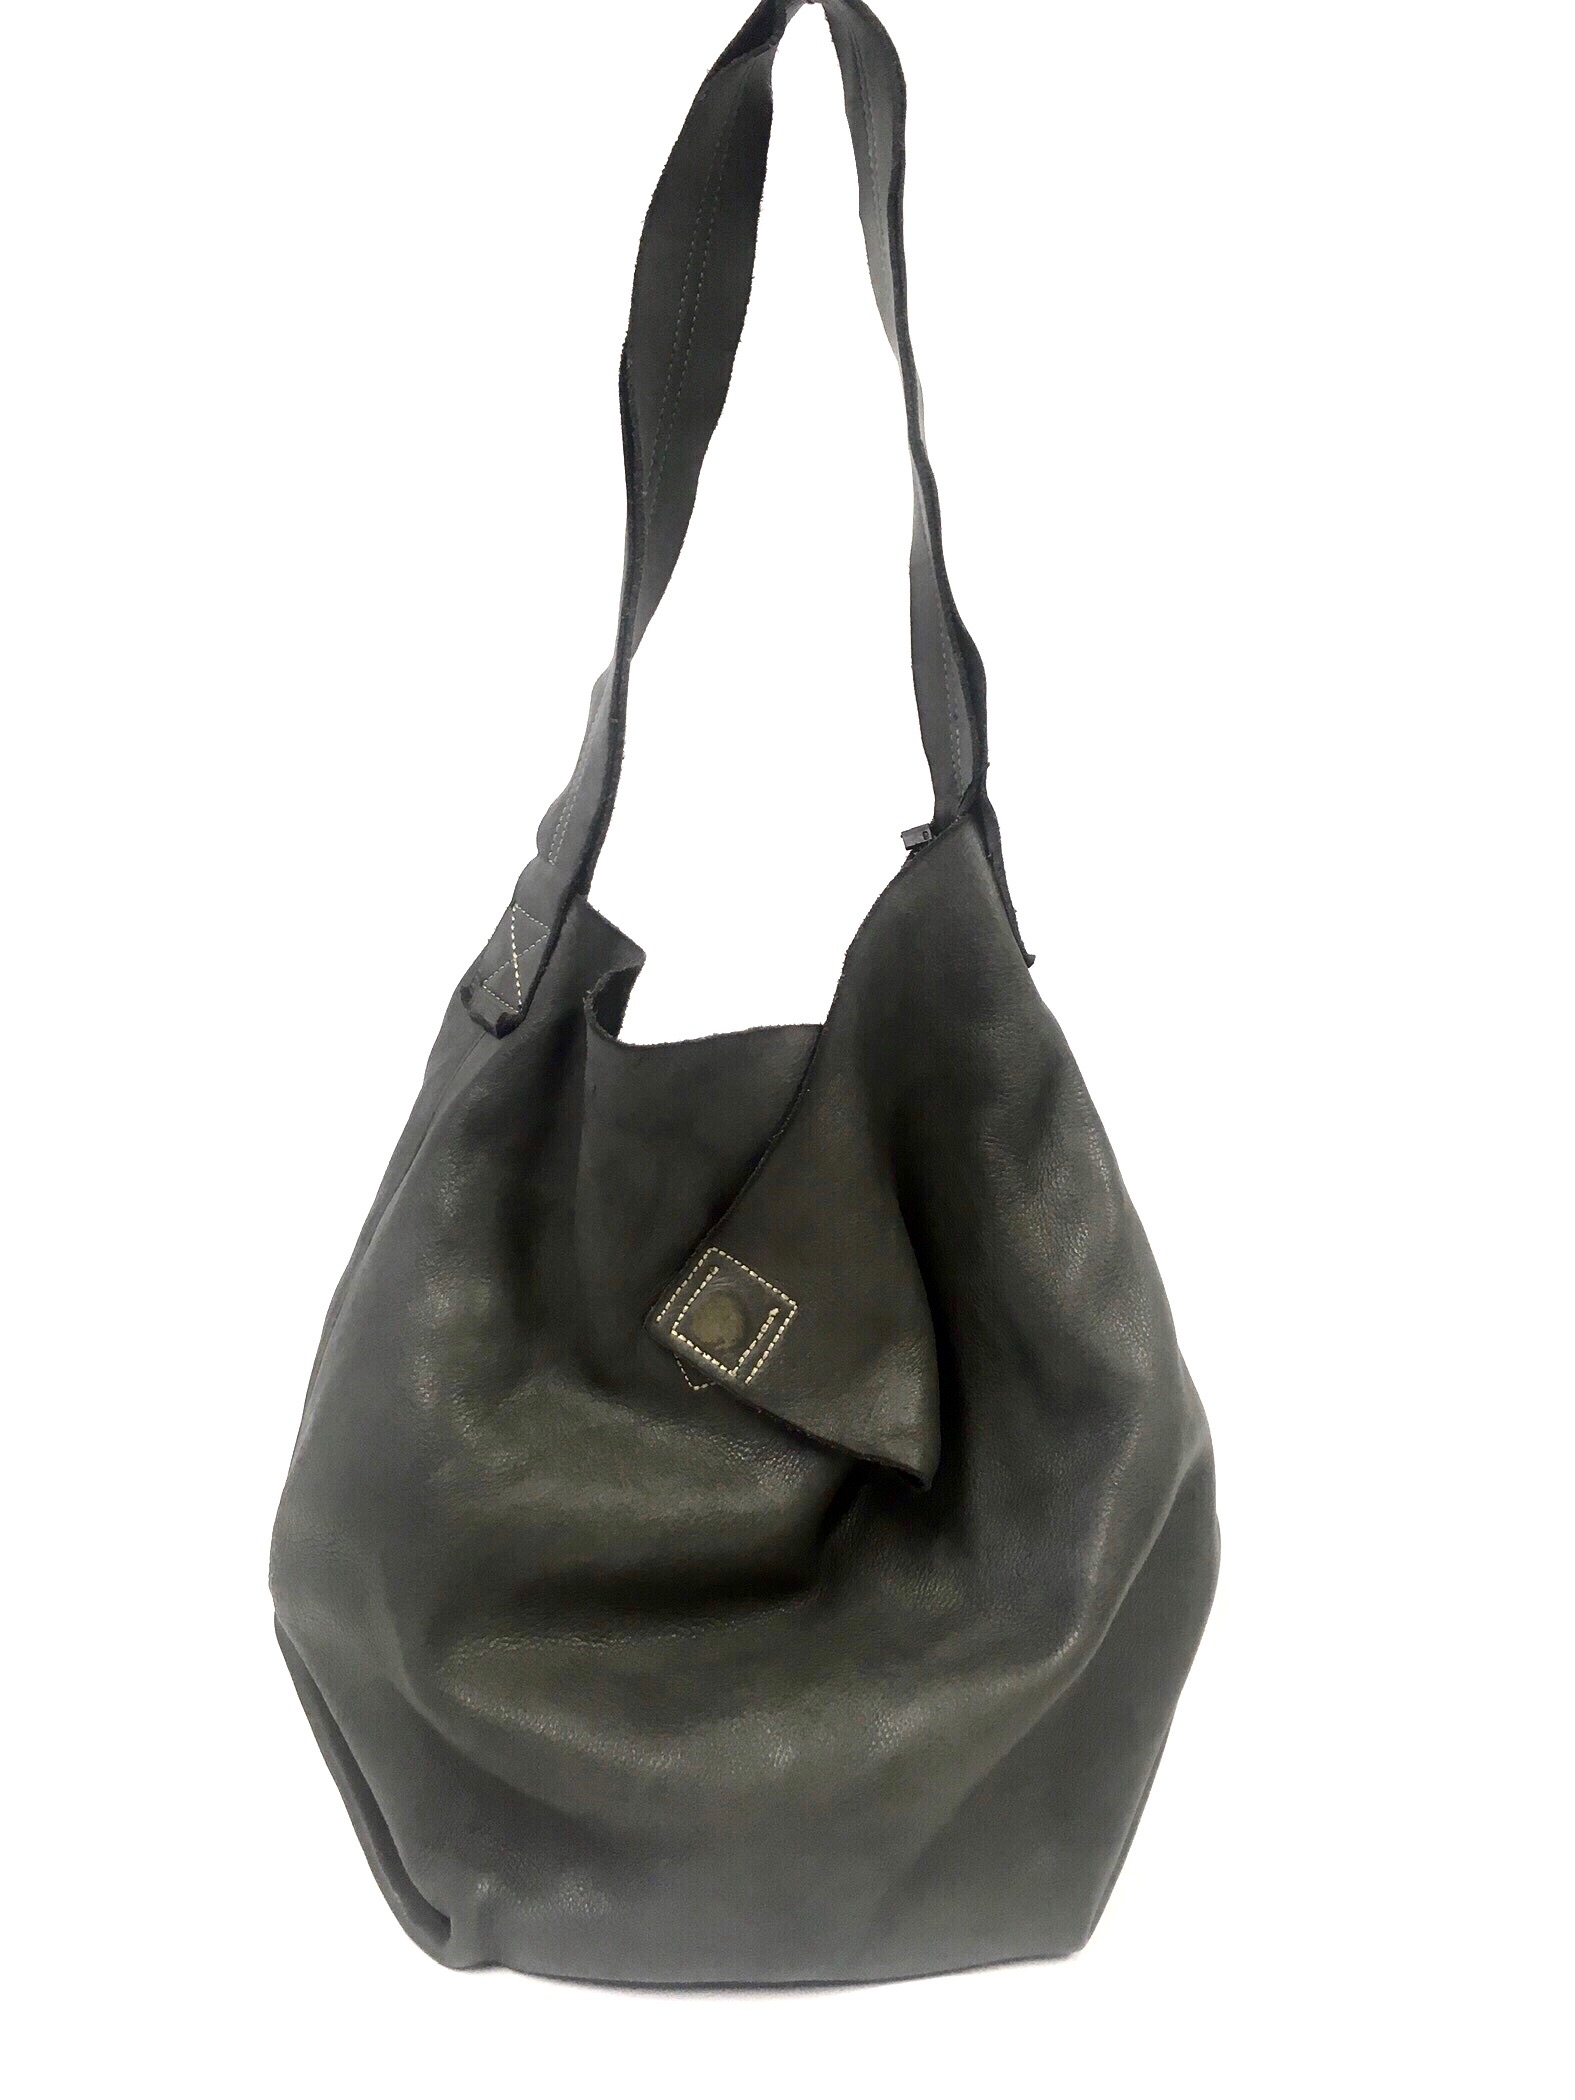 grey hobo bag